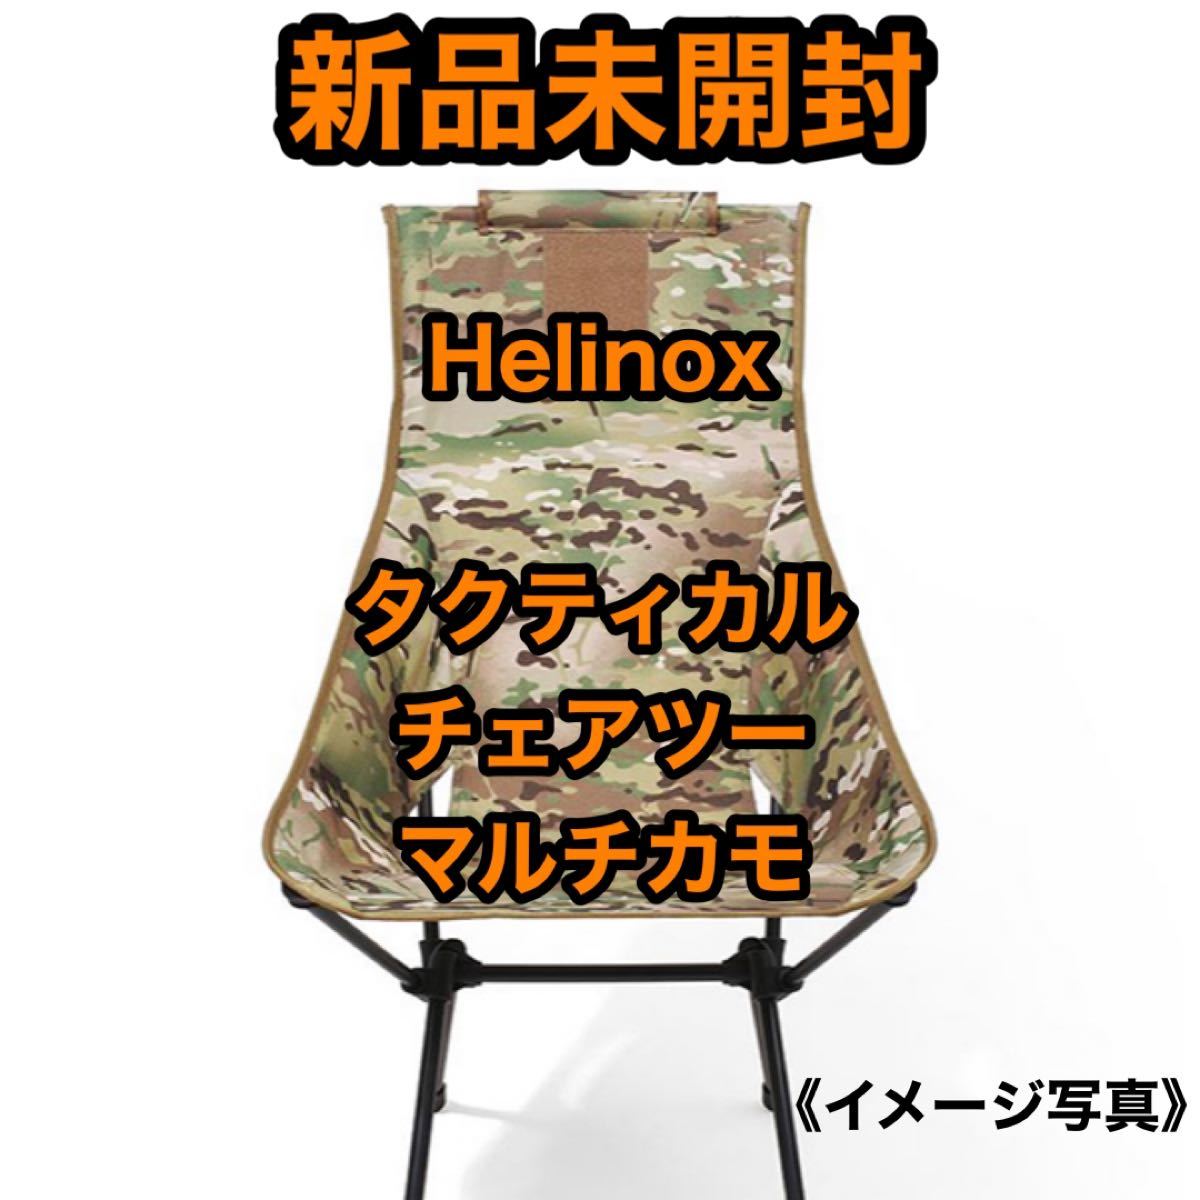 【新品未開封】希少品 Helinox ヘリノックス タクティカル チェアツー マルチカモ